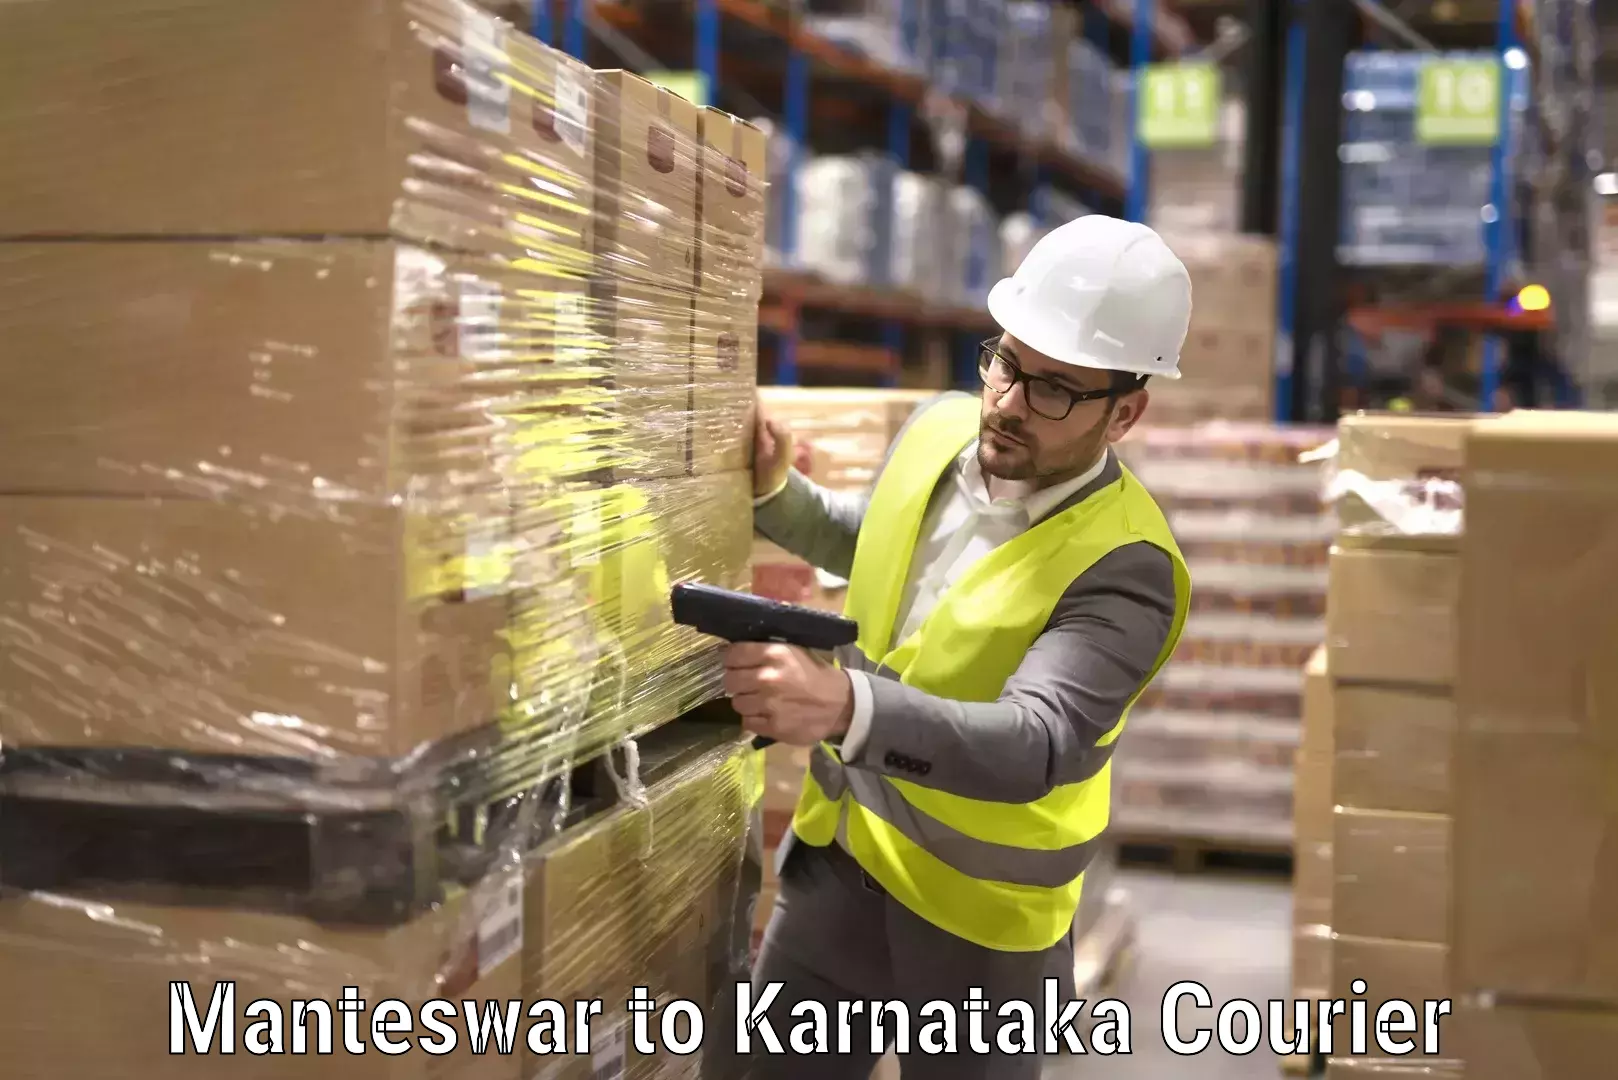 Furniture moving strategies Manteswar to Karnataka